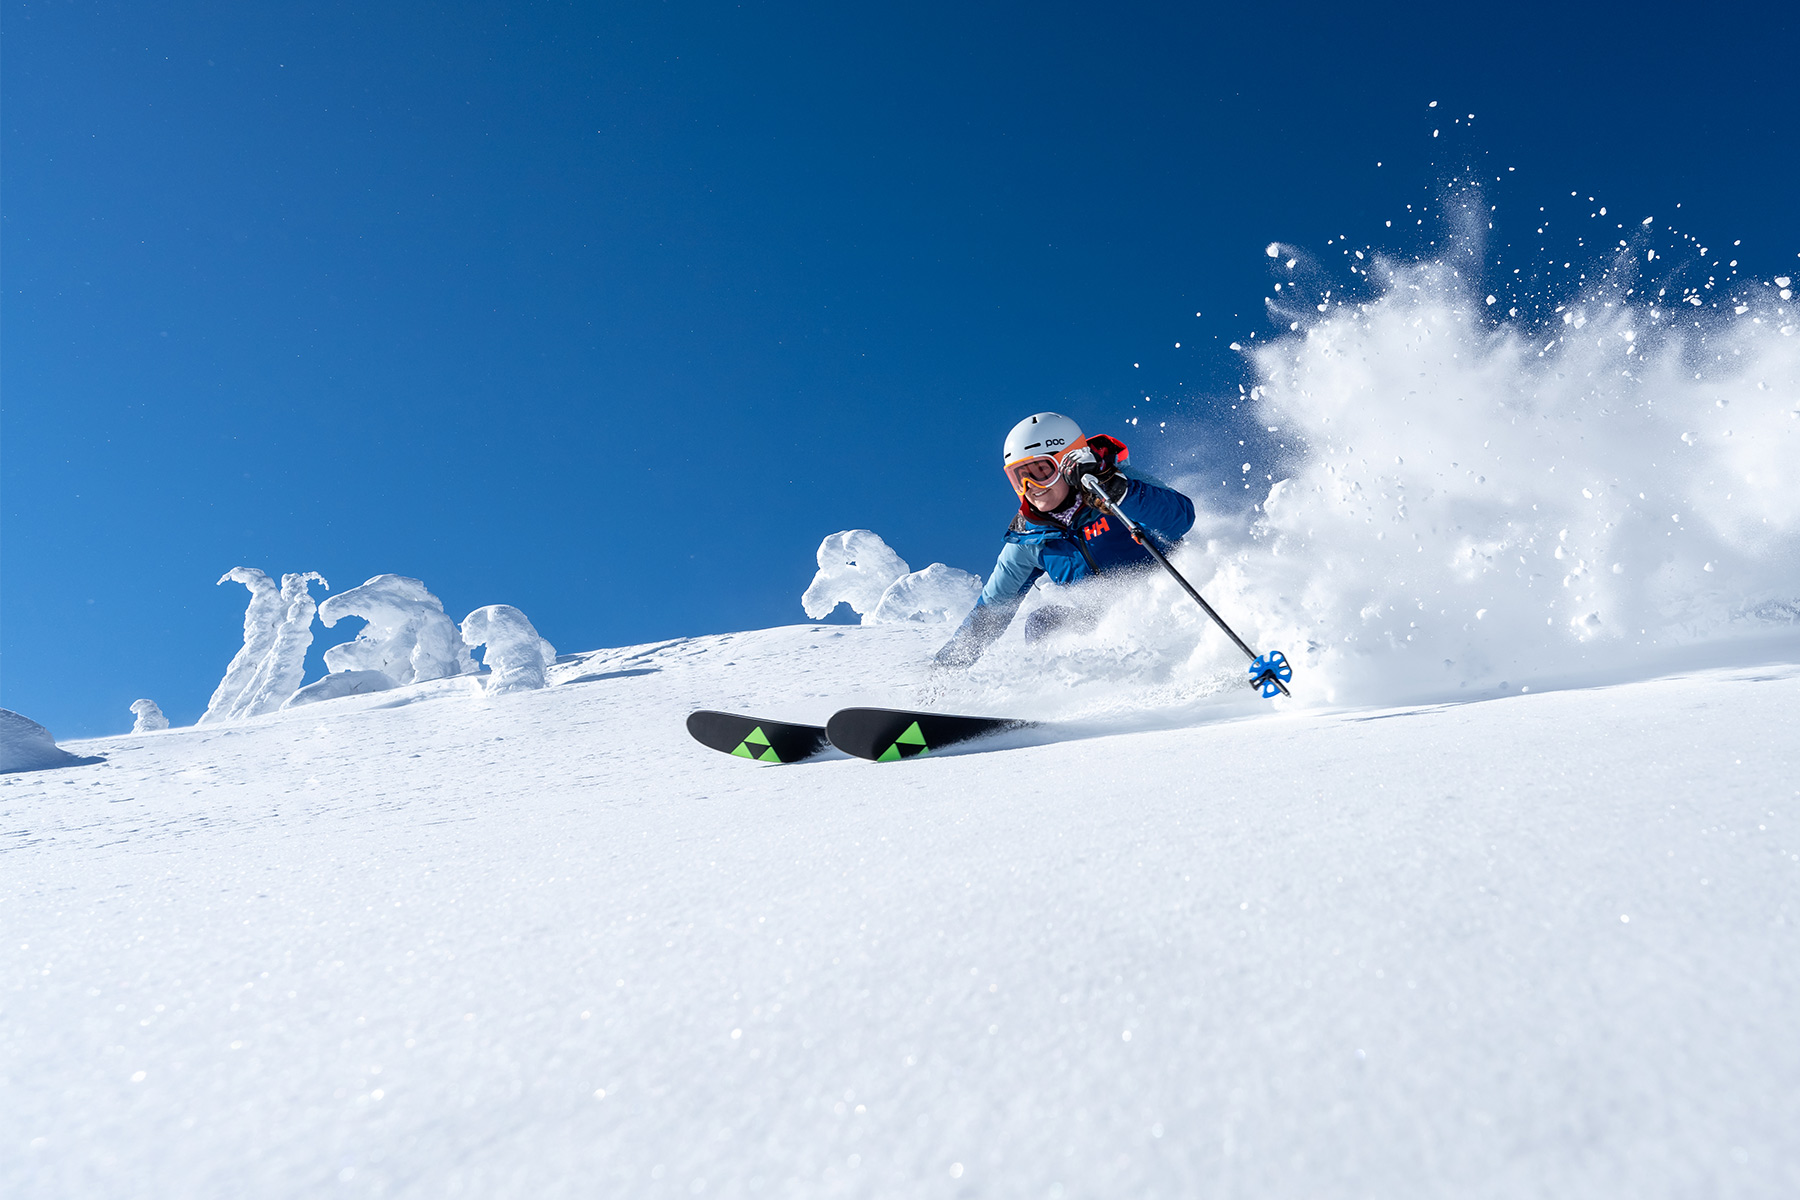 Skier in powder with blue sky